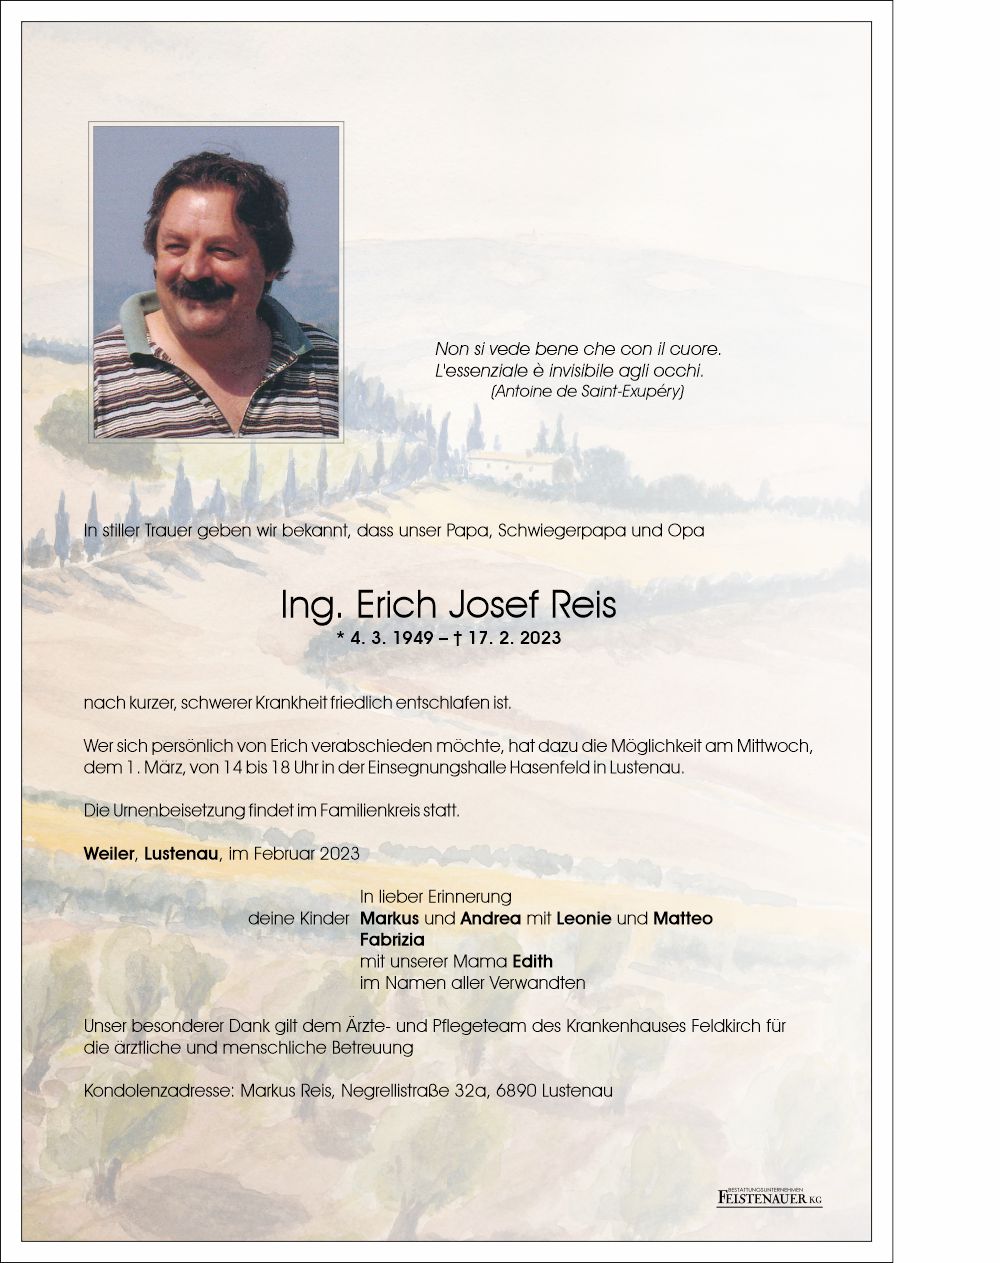 Ing. Erich Josef Reis